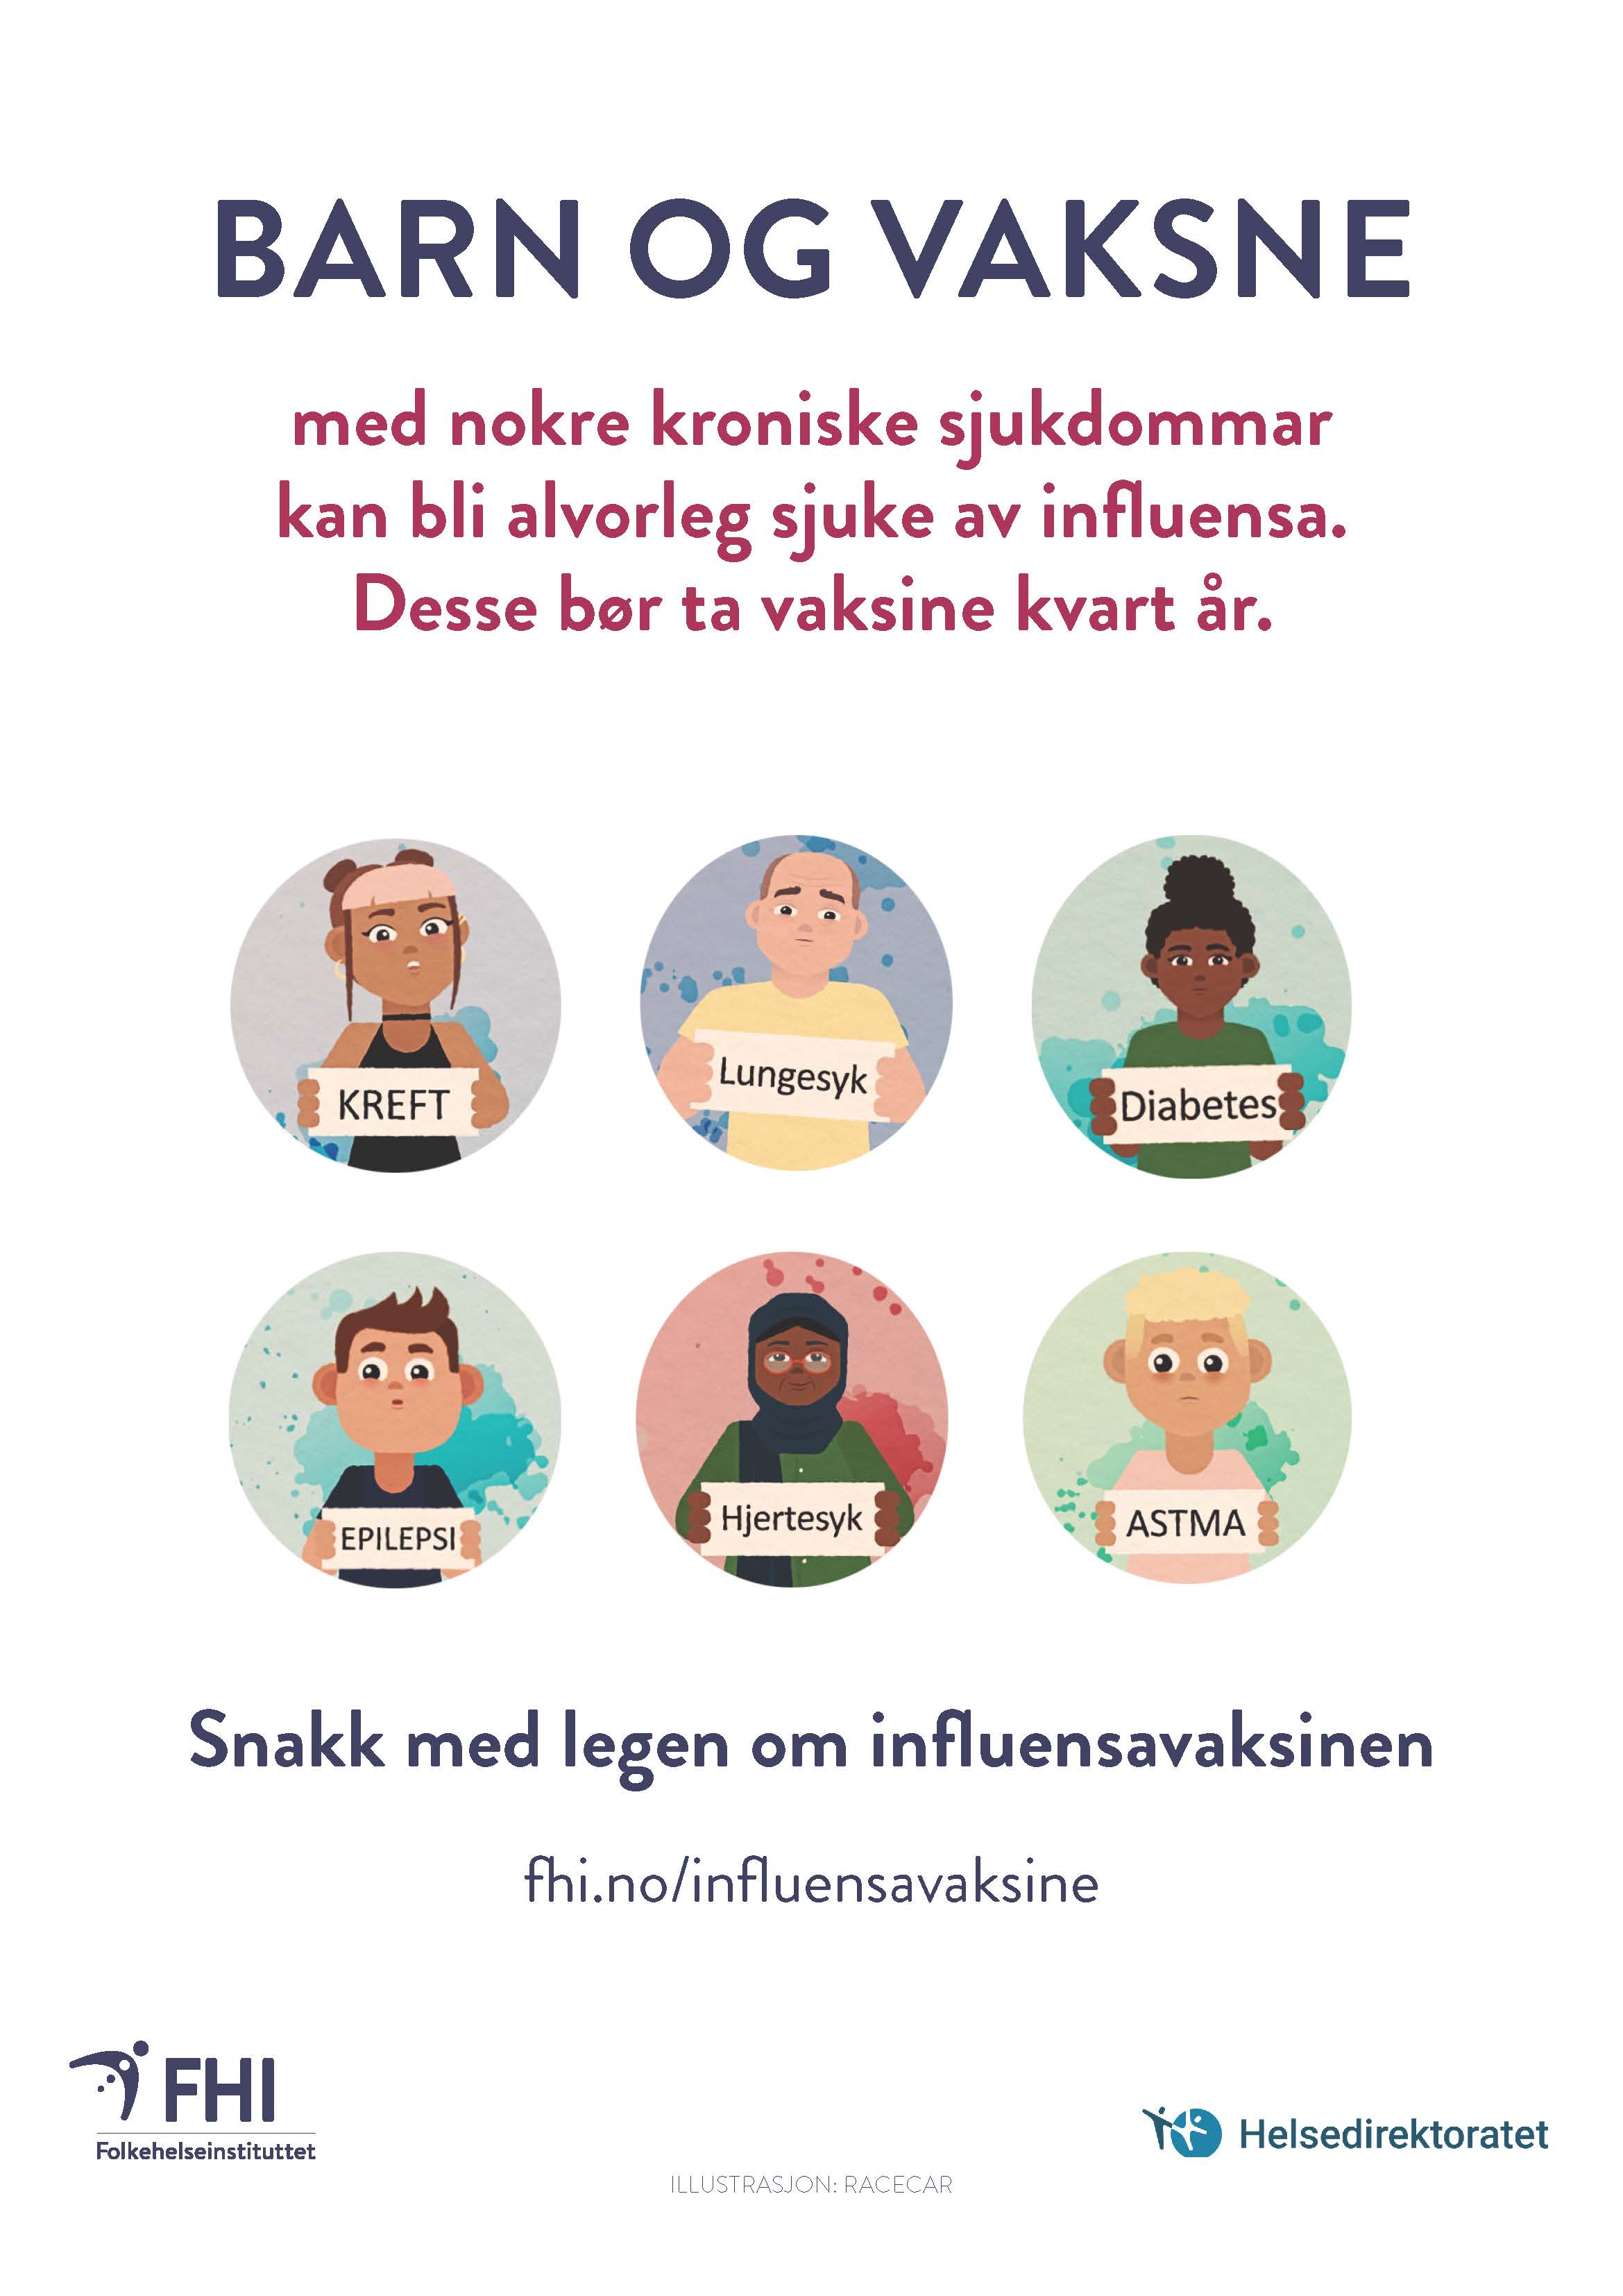 Plakat om influensavaksine til risikogrupper